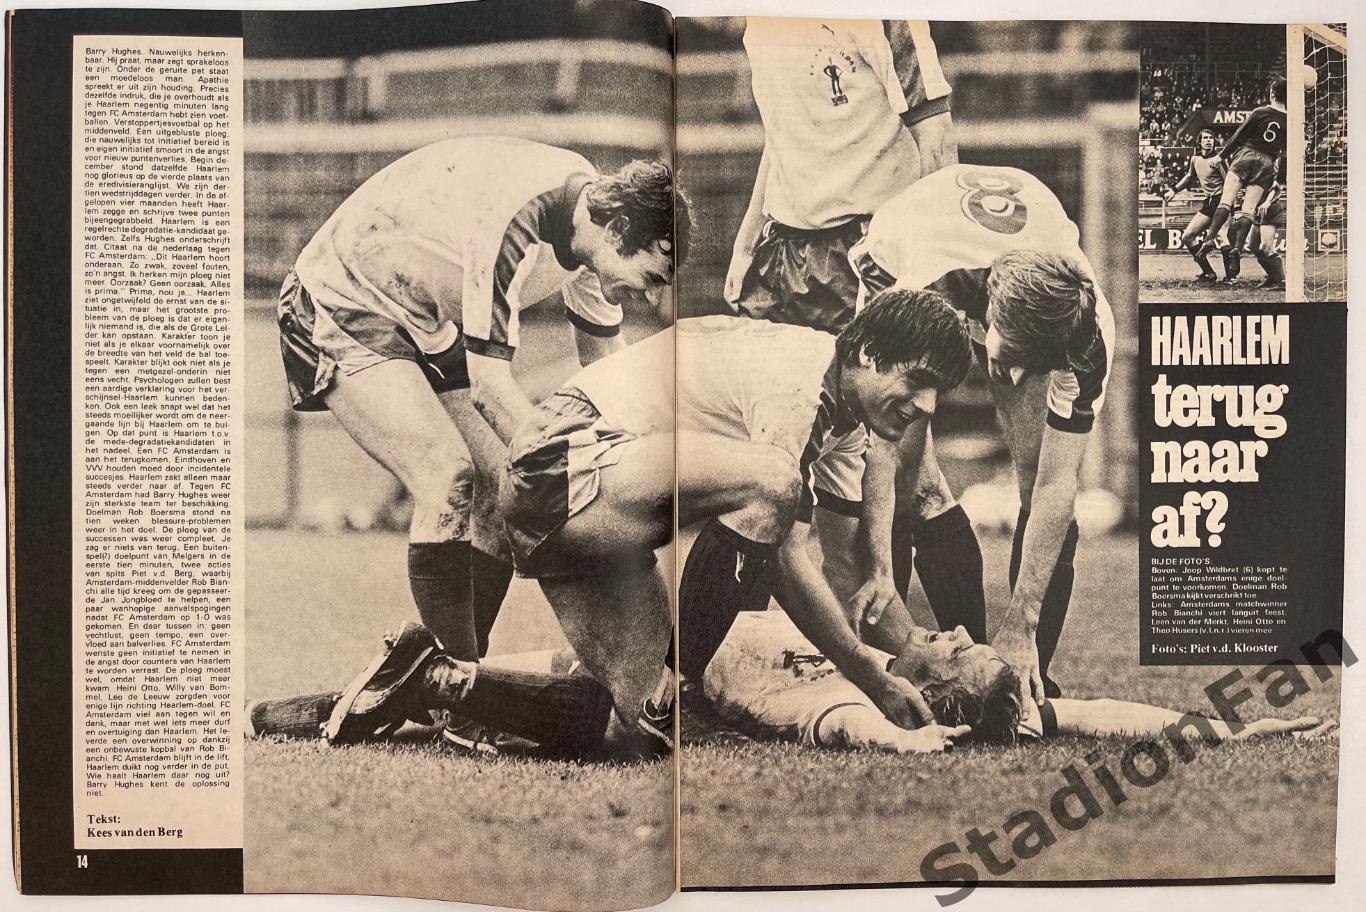 Журнал Voetbal nr.14 - 1977 год. 3